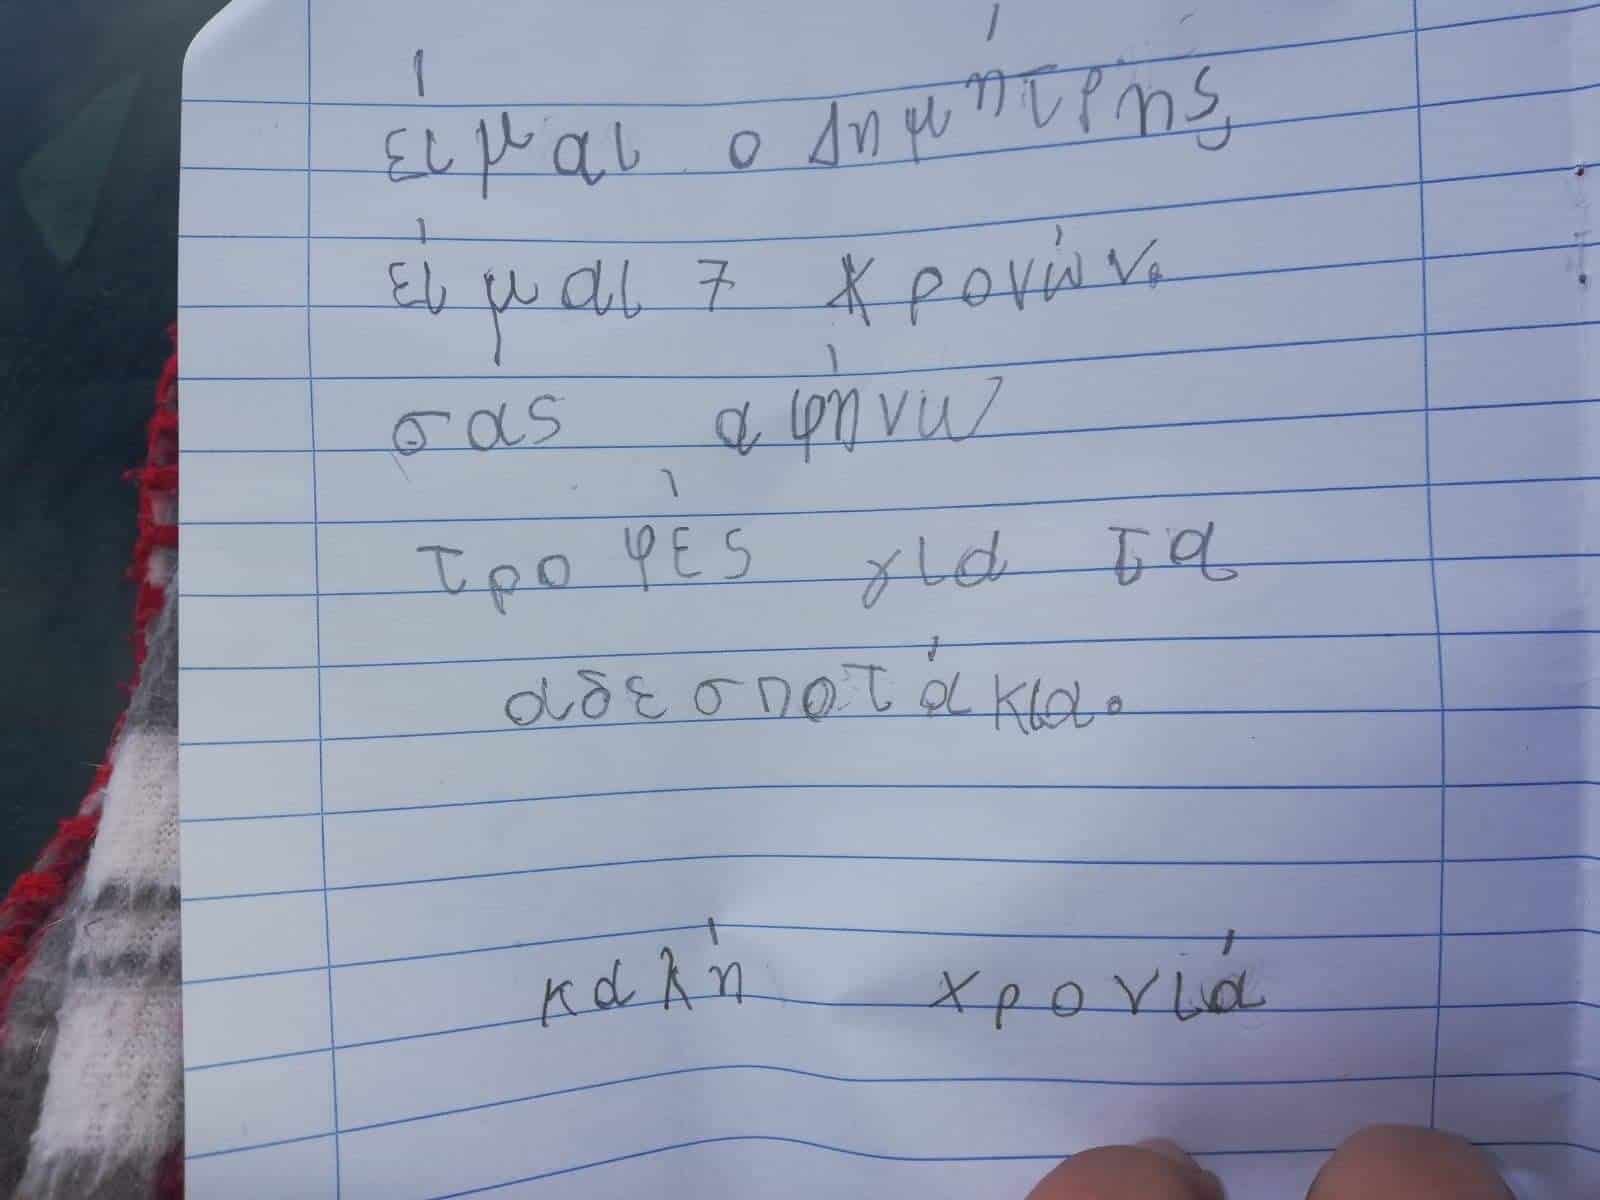 Συρος: 7χρονος έδωσε τα χρήματα από τα κάλαντα των εορτών για να αγοράσει τροφή για τα αδέσποτα